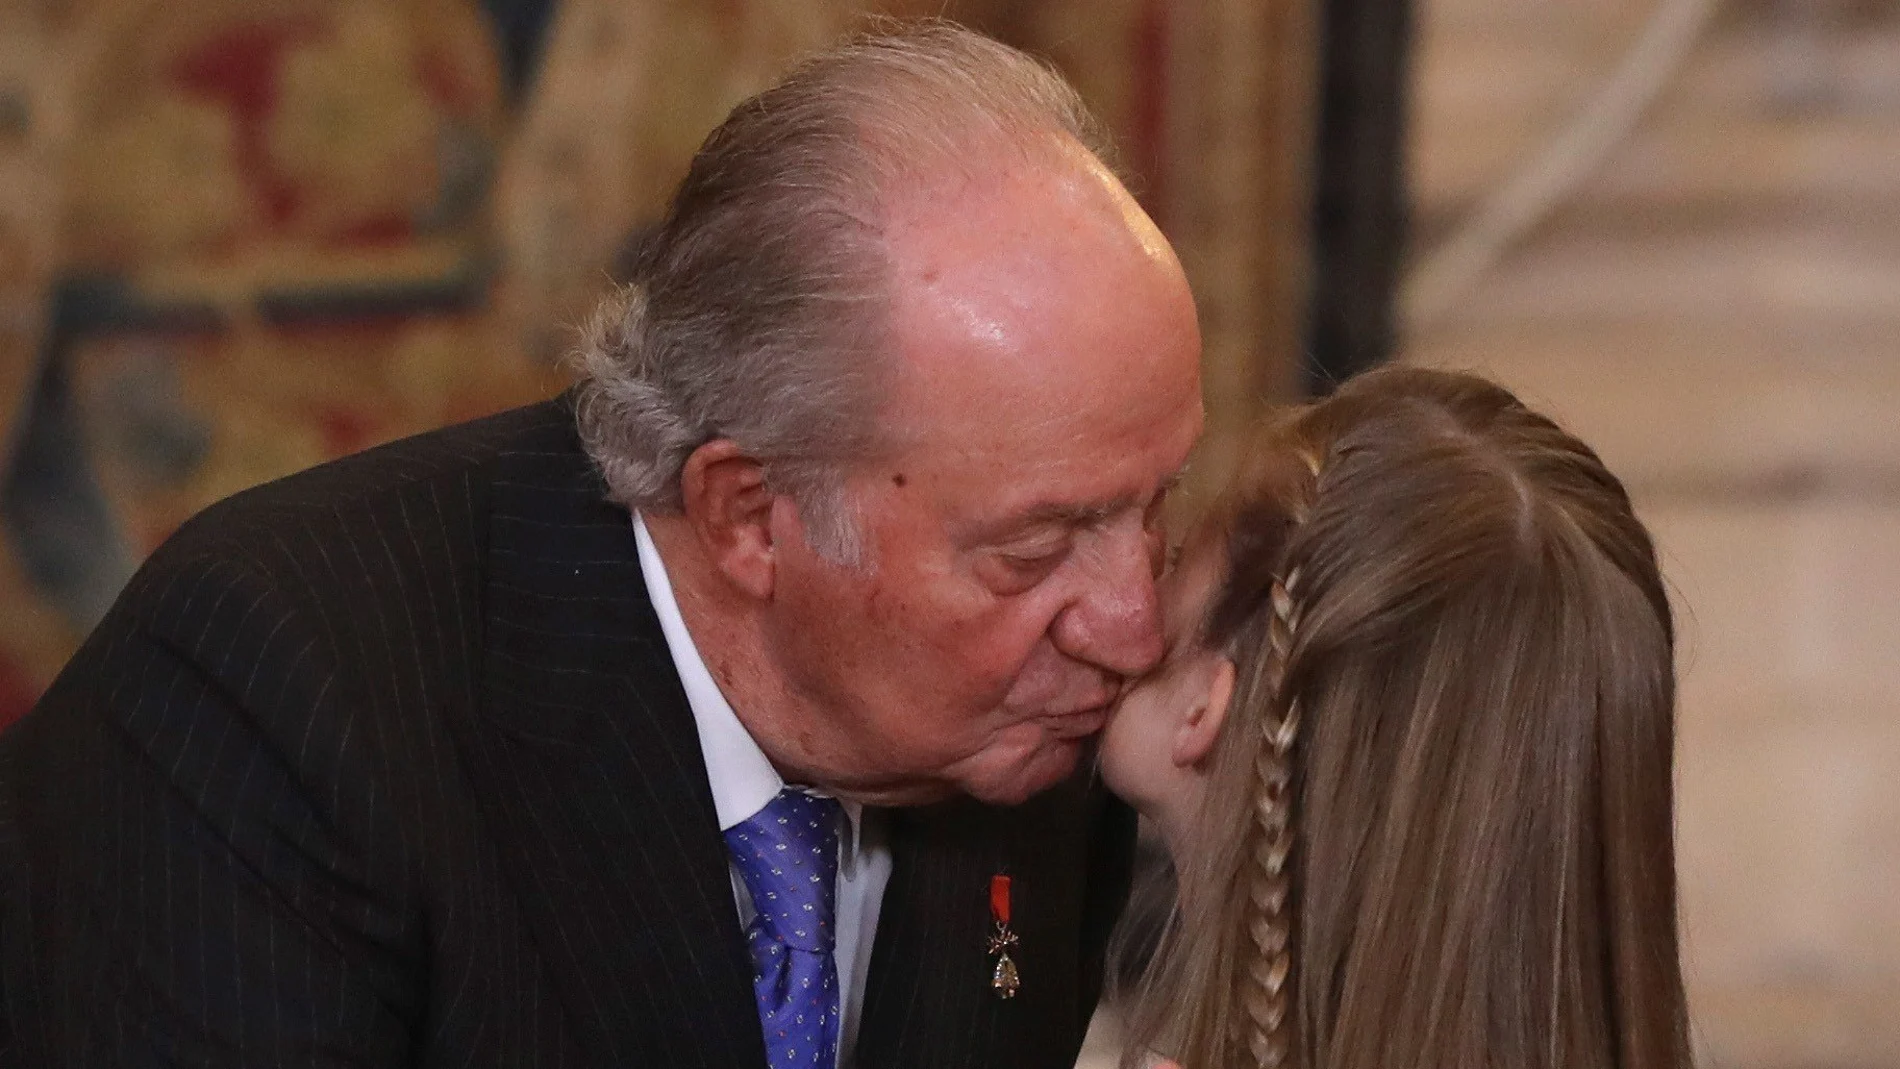 El Rey Juan Carlos con su nieta, la princesa Leonor, tras recibir el Toisón de Oro por parte de su padre Felipe VI